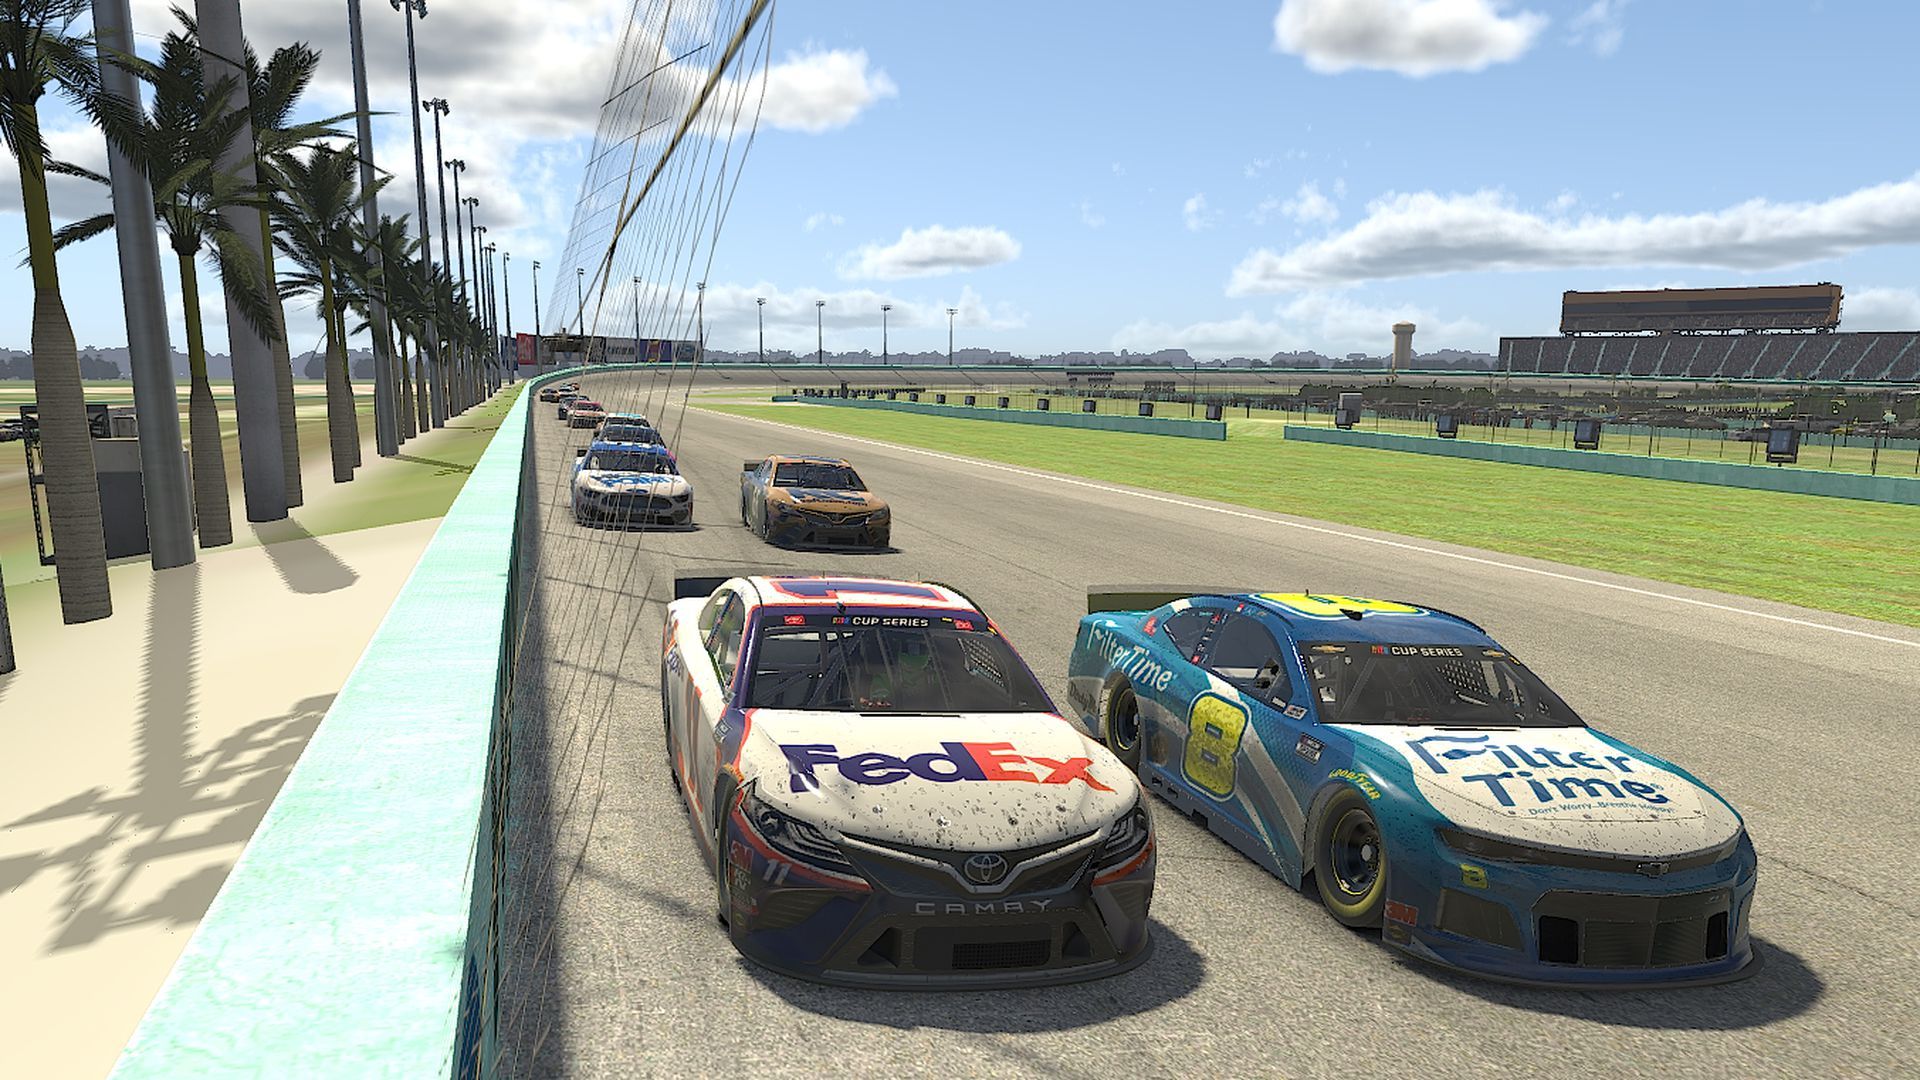 A racing game